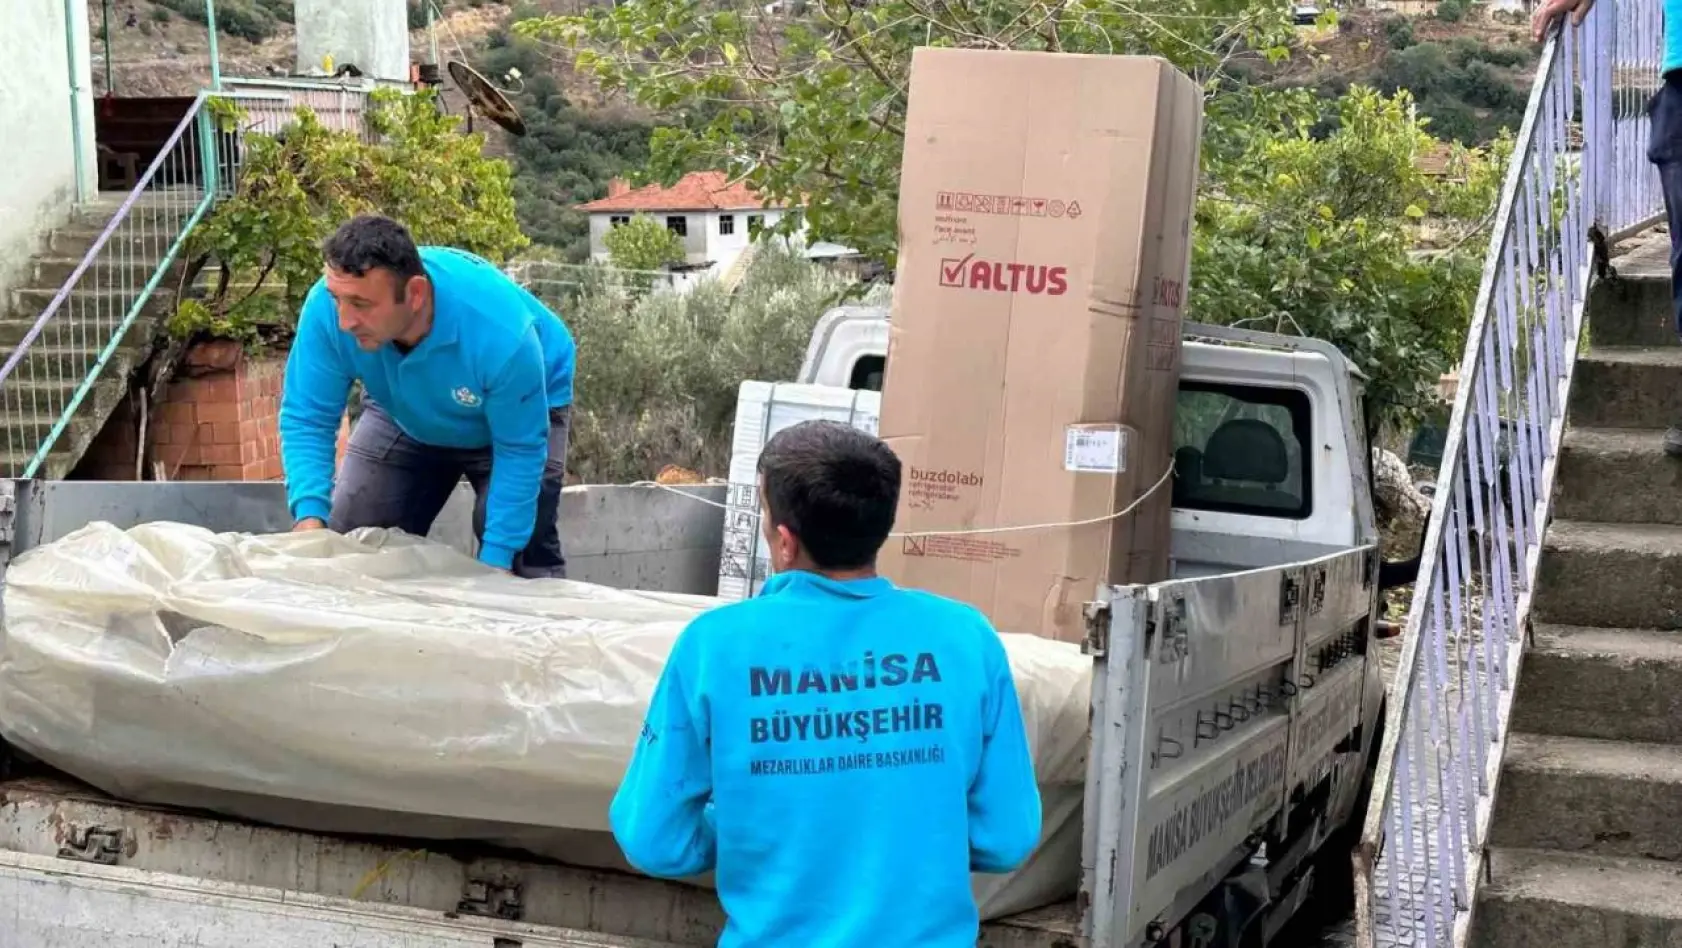 Manisa Büyükşehir Belediyesi Bulut ailesine yardım elini uzattı